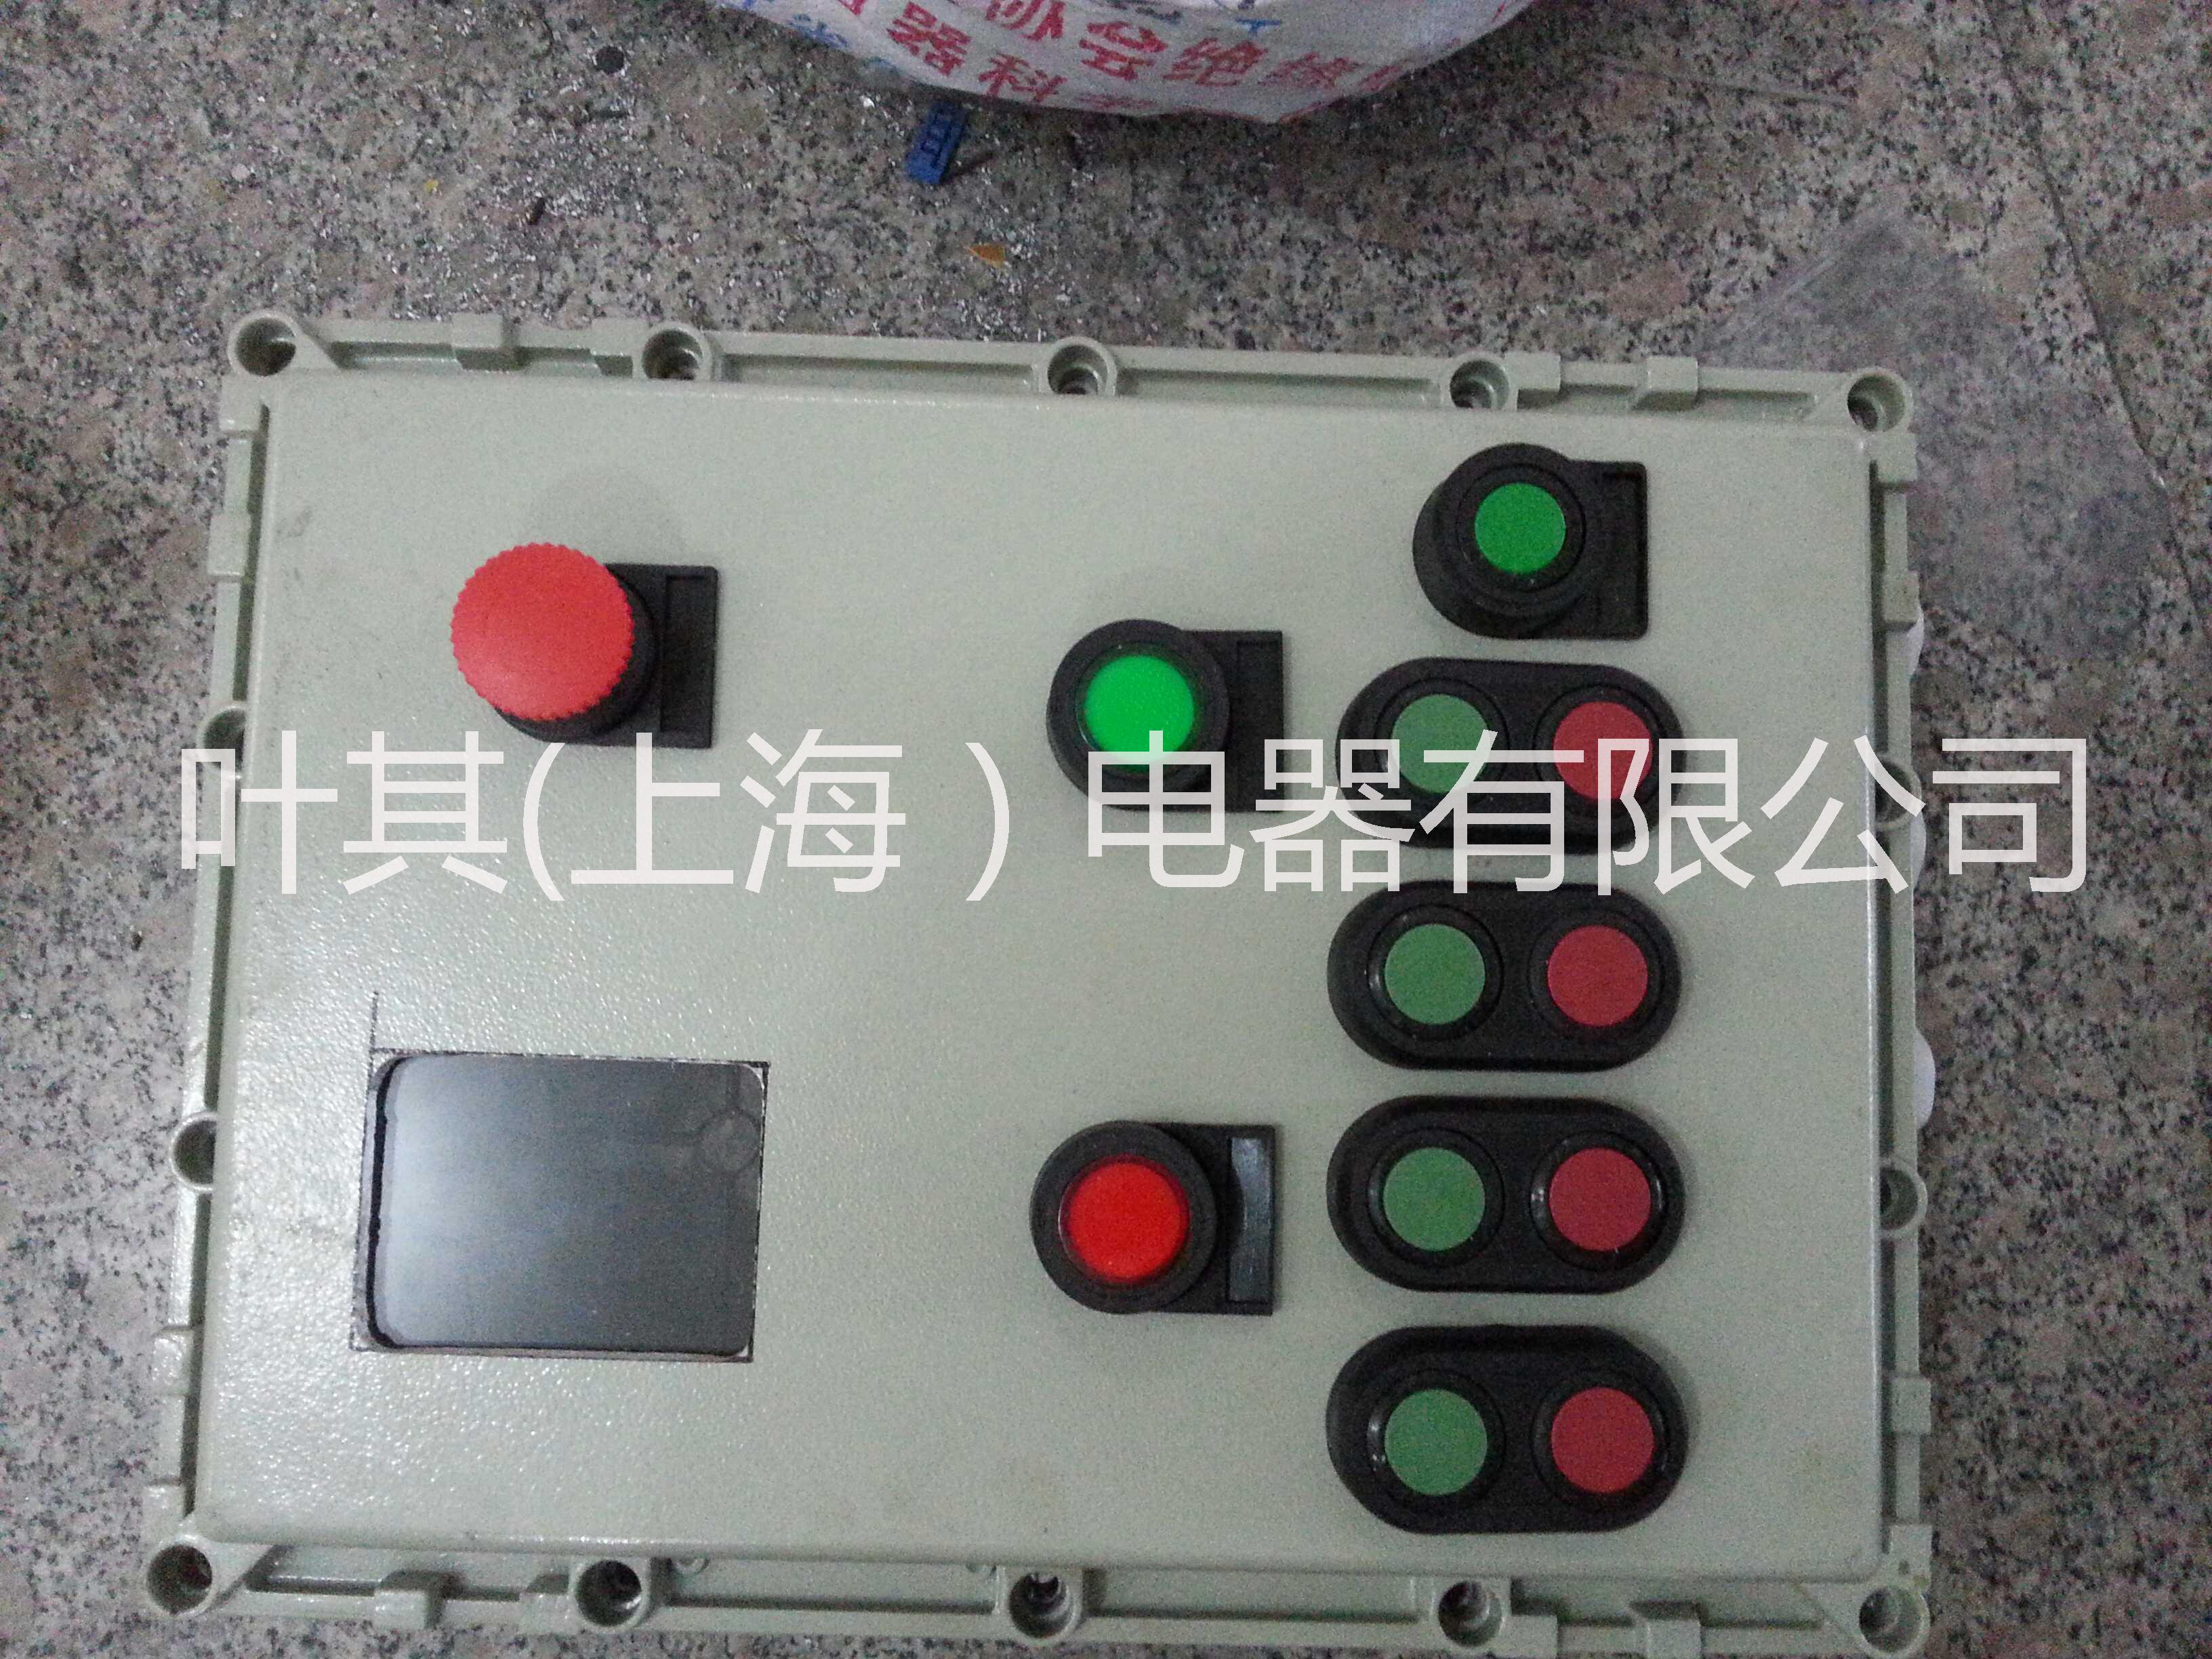 供应防爆按钮箱免费出图定做质优价廉电机控制箱、防爆按钮箱、水泵控制箱